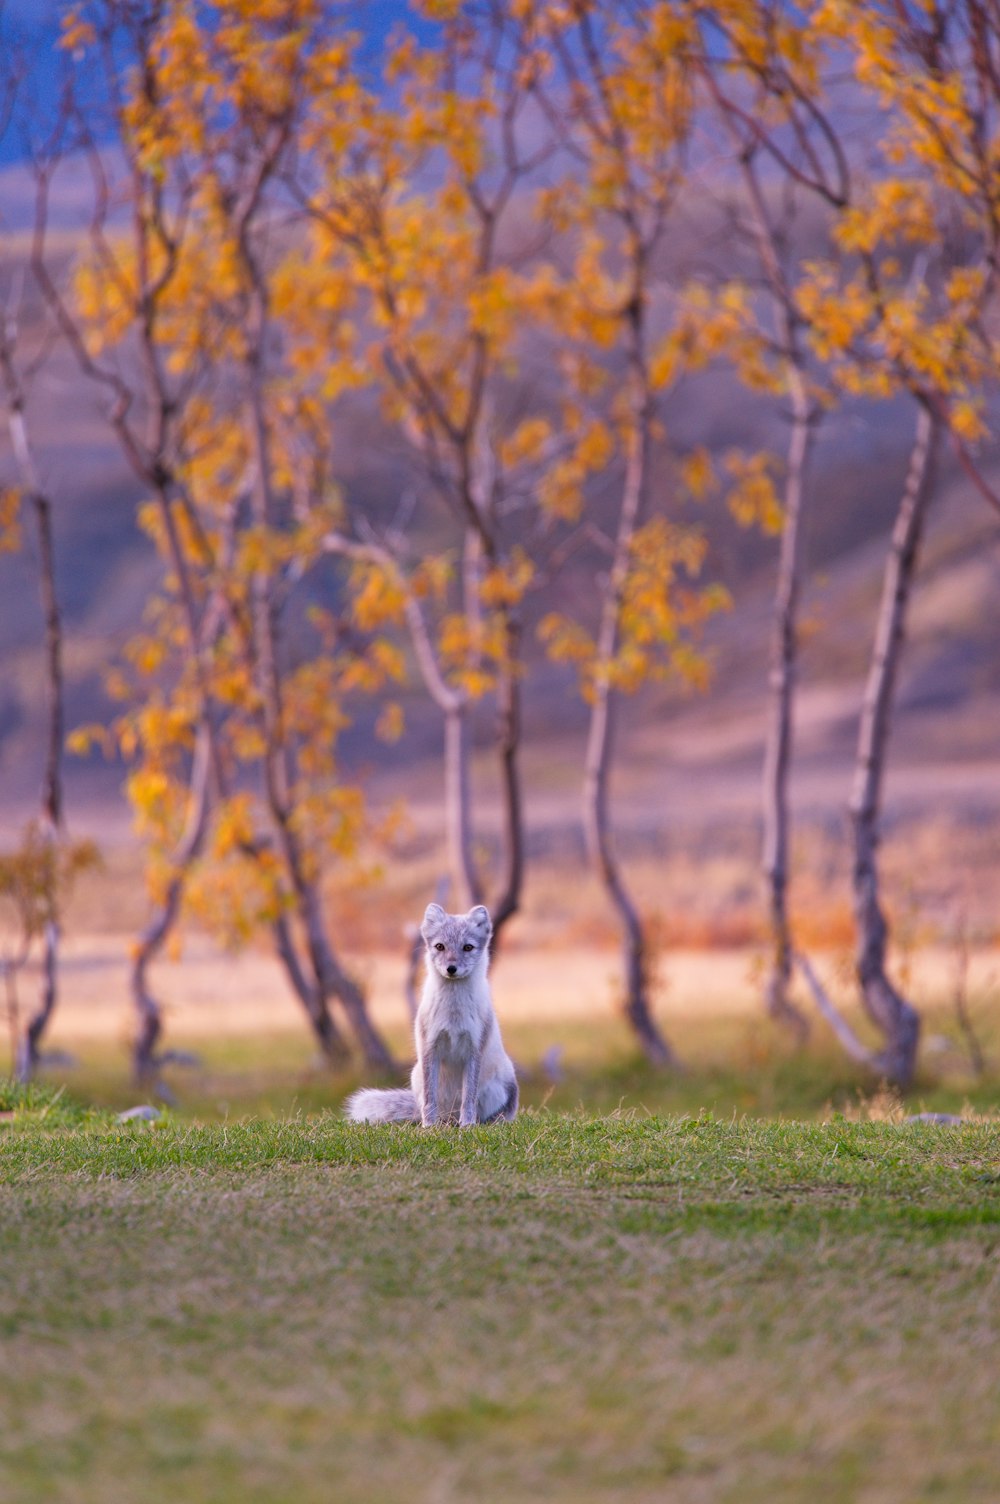 Photographie sélective de renard blanc près d’arbres à feuilles brunes